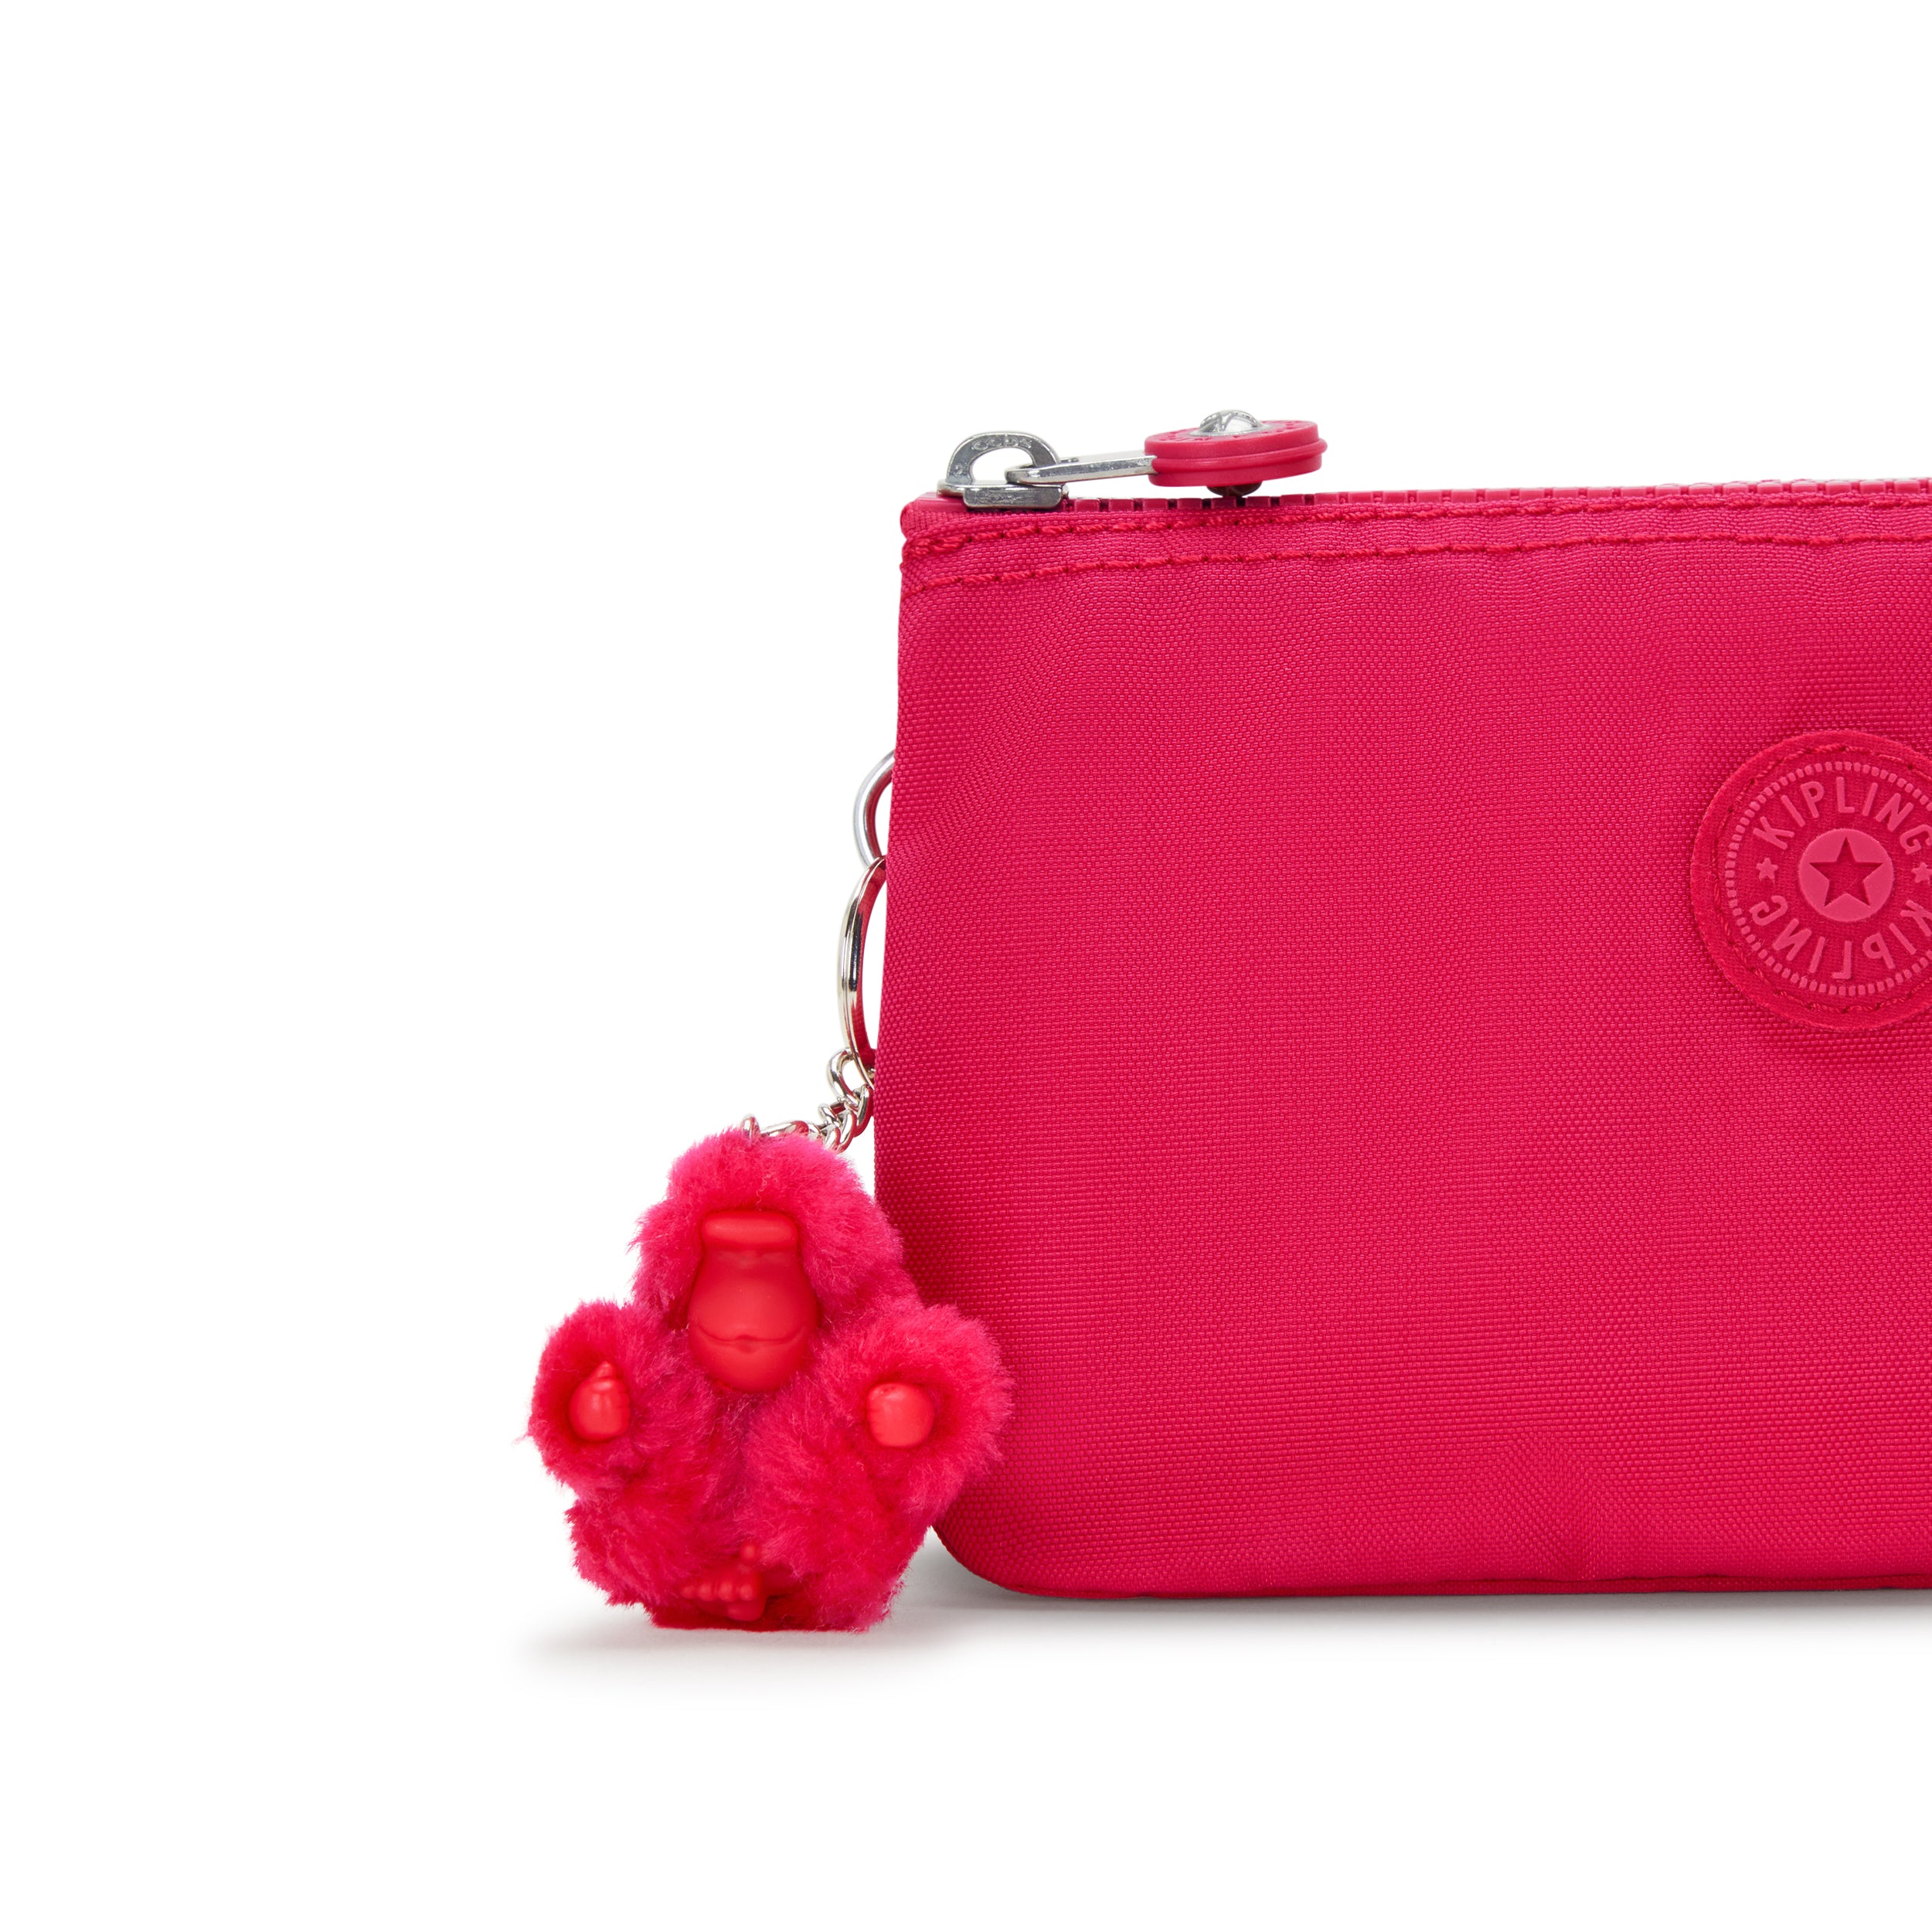 KIPLING-Creativity L-Large purse-Confetti Pink-13265-T73